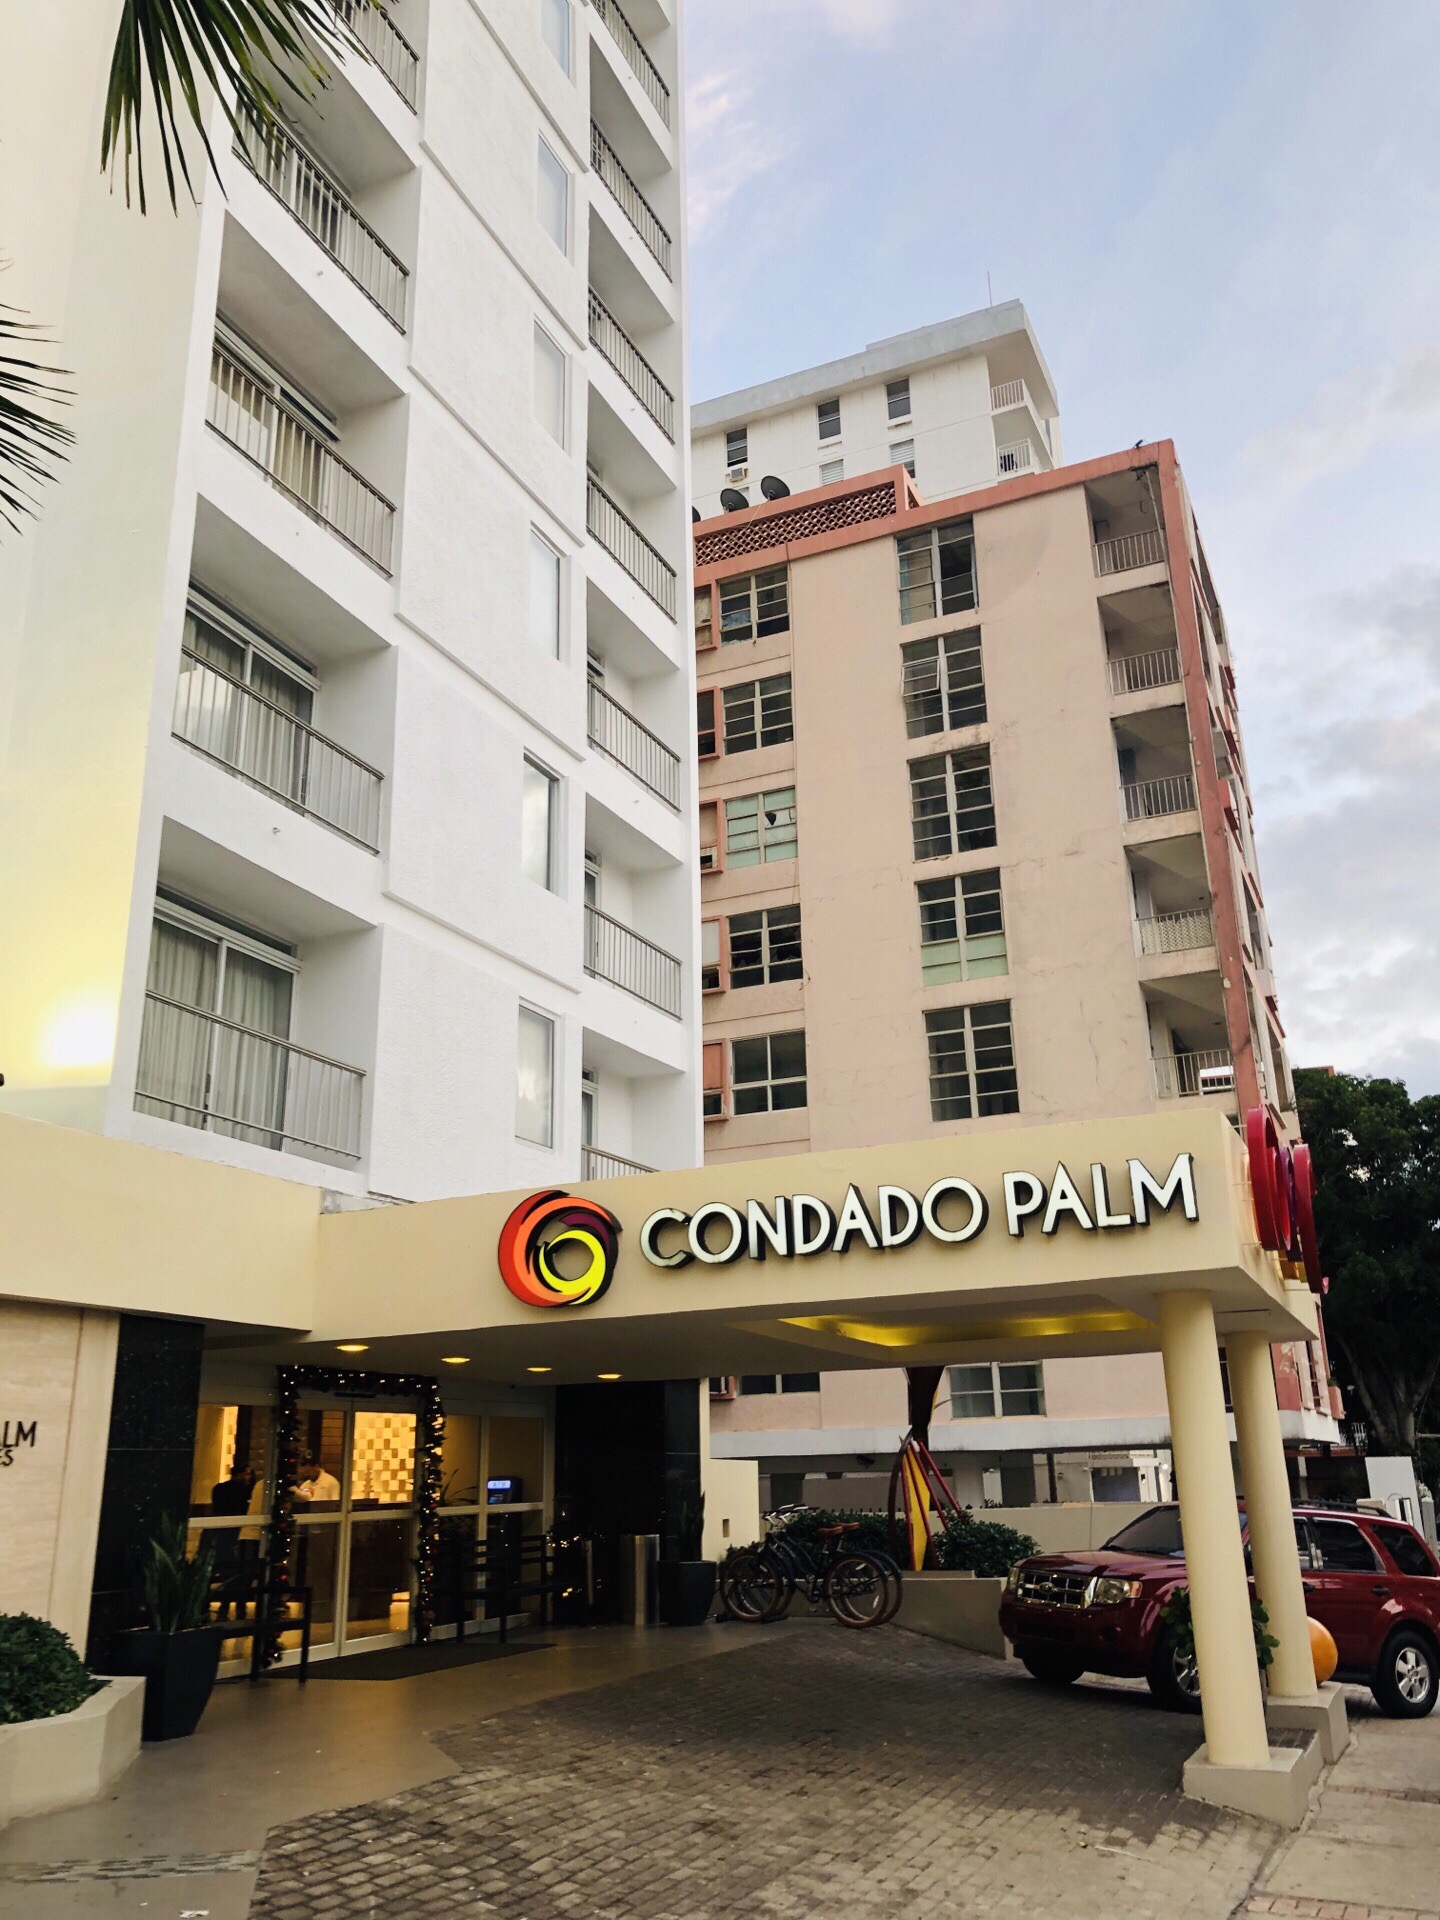 携程上可选择的波多黎各酒店不多，点评也有限，大都booking上转载的，这家酒店是根据价格和地理位置